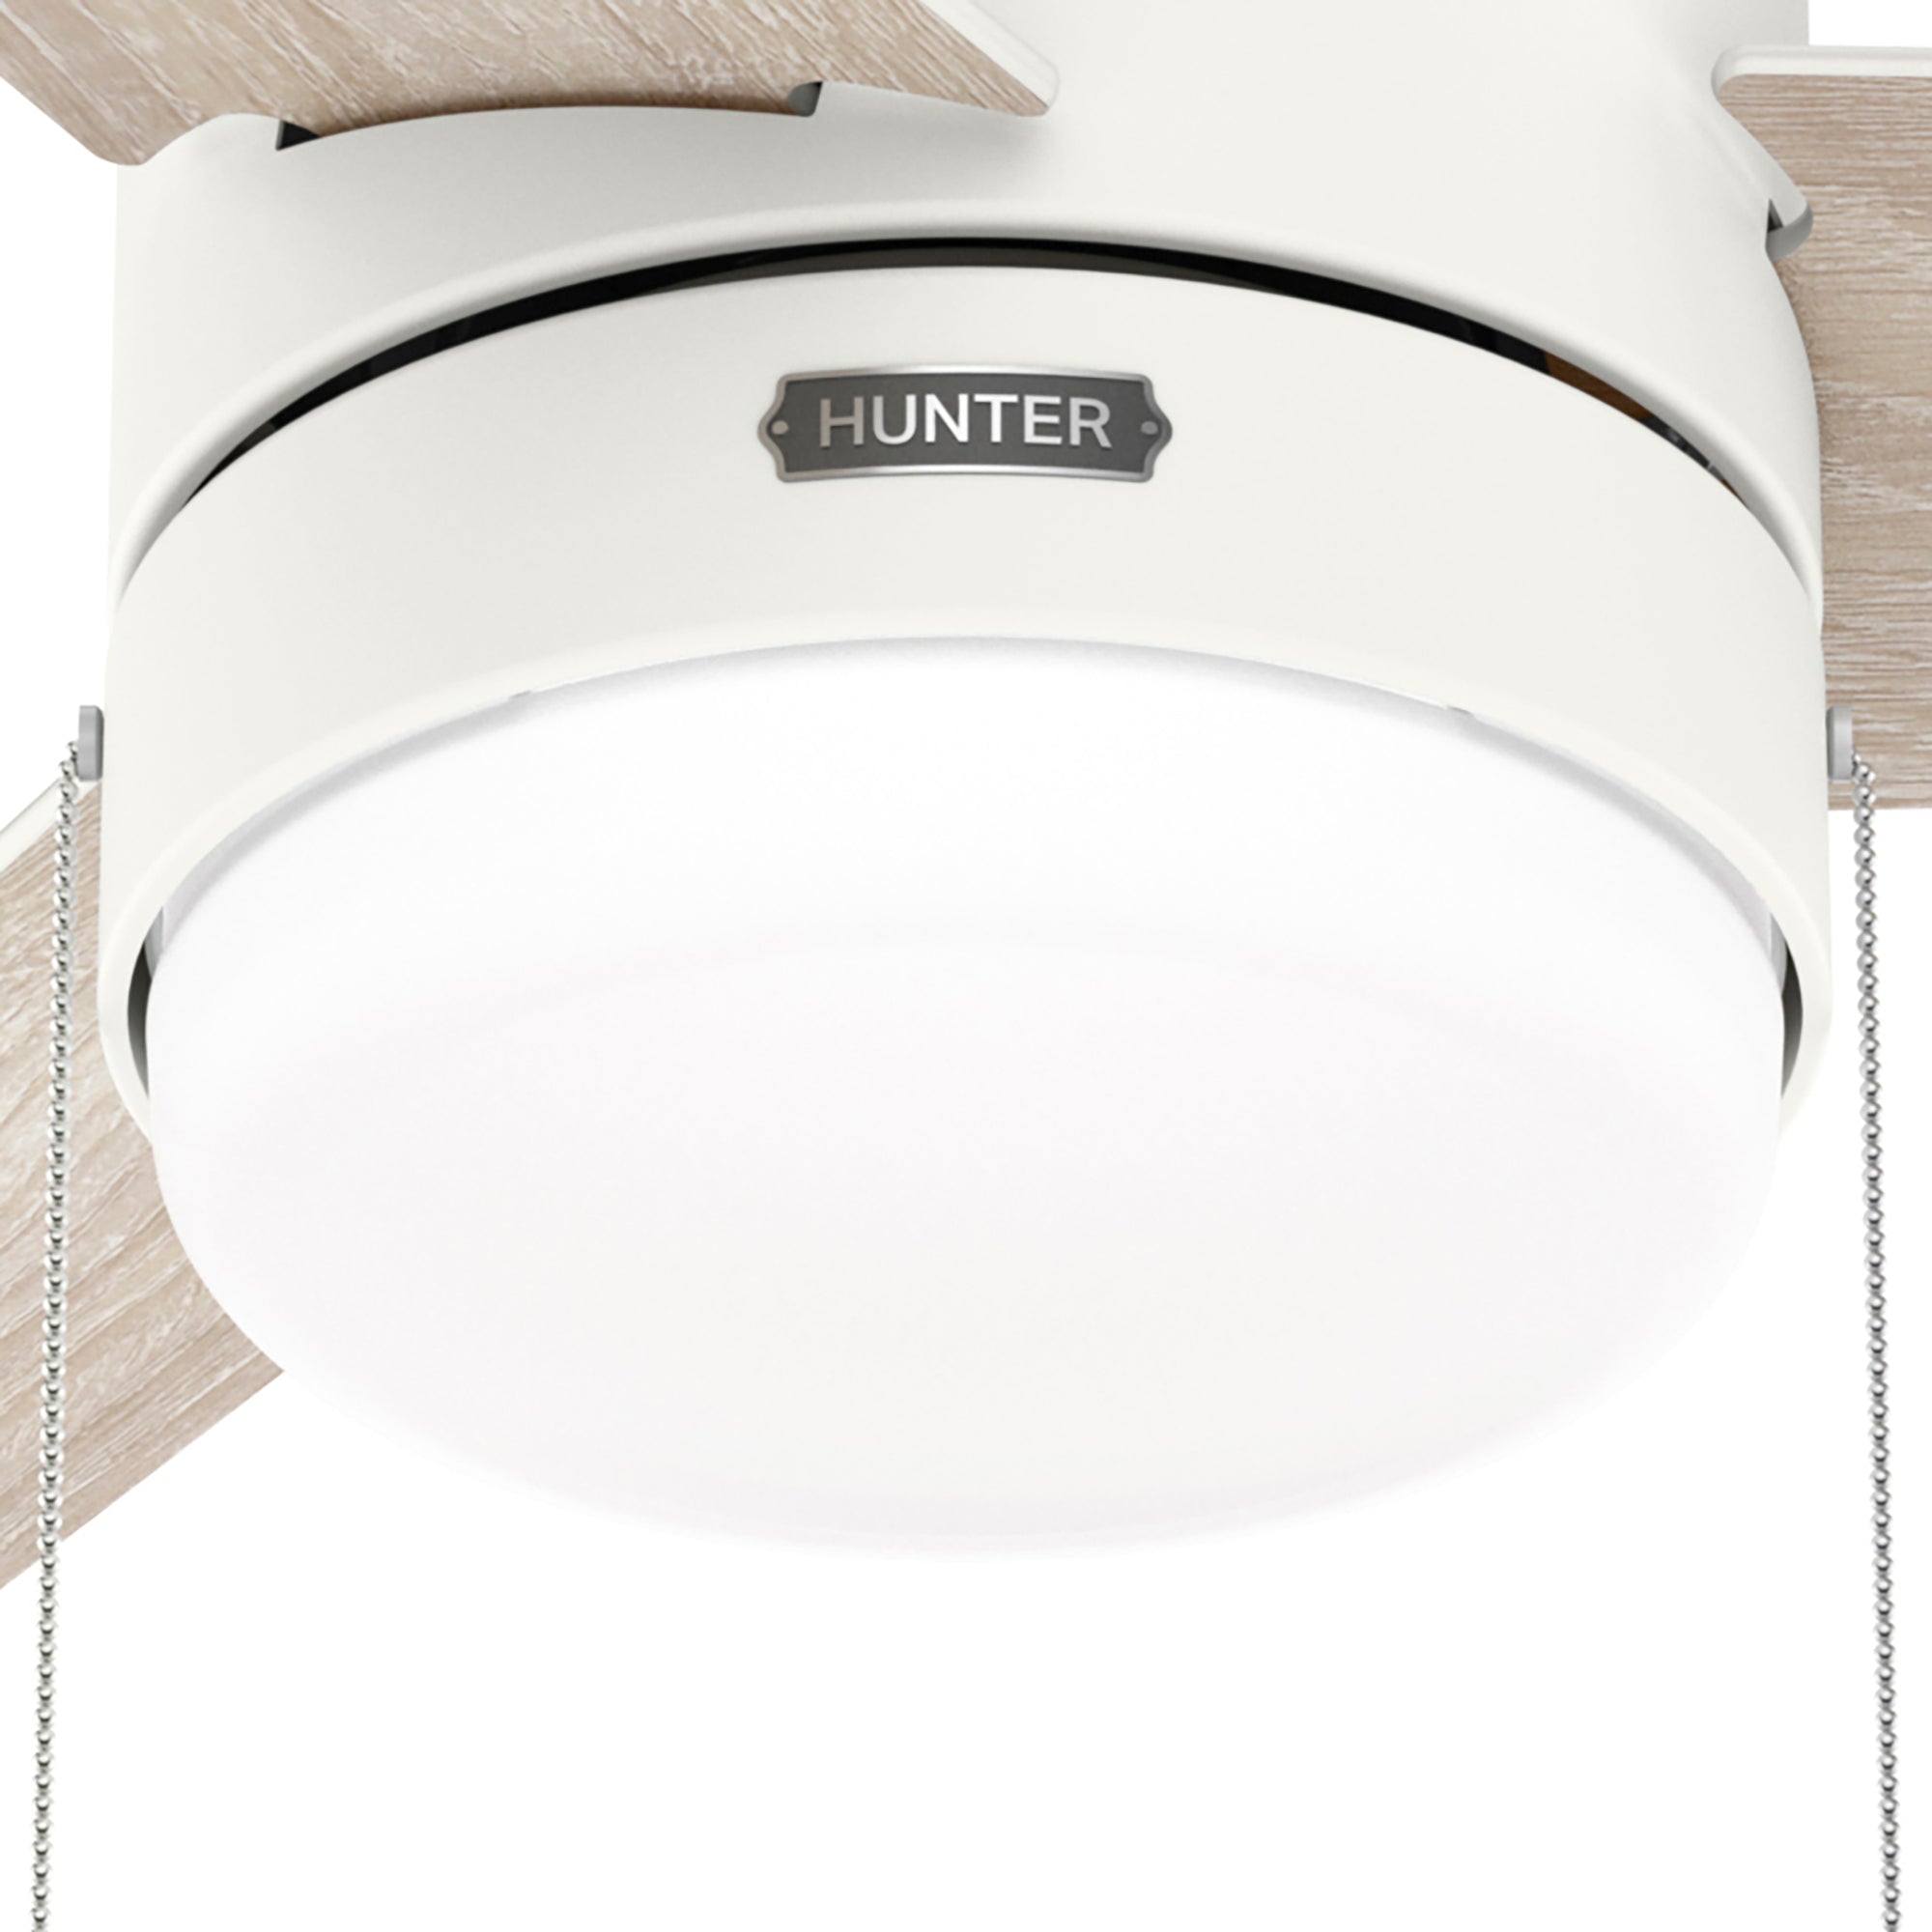 Hunter 52 inch Brunner Low Profile Ceiling Fan with LED Light Kit and Pull Chain Ceiling Fan Hunter Matte White Light Oak / Fresh White Painted Cased White